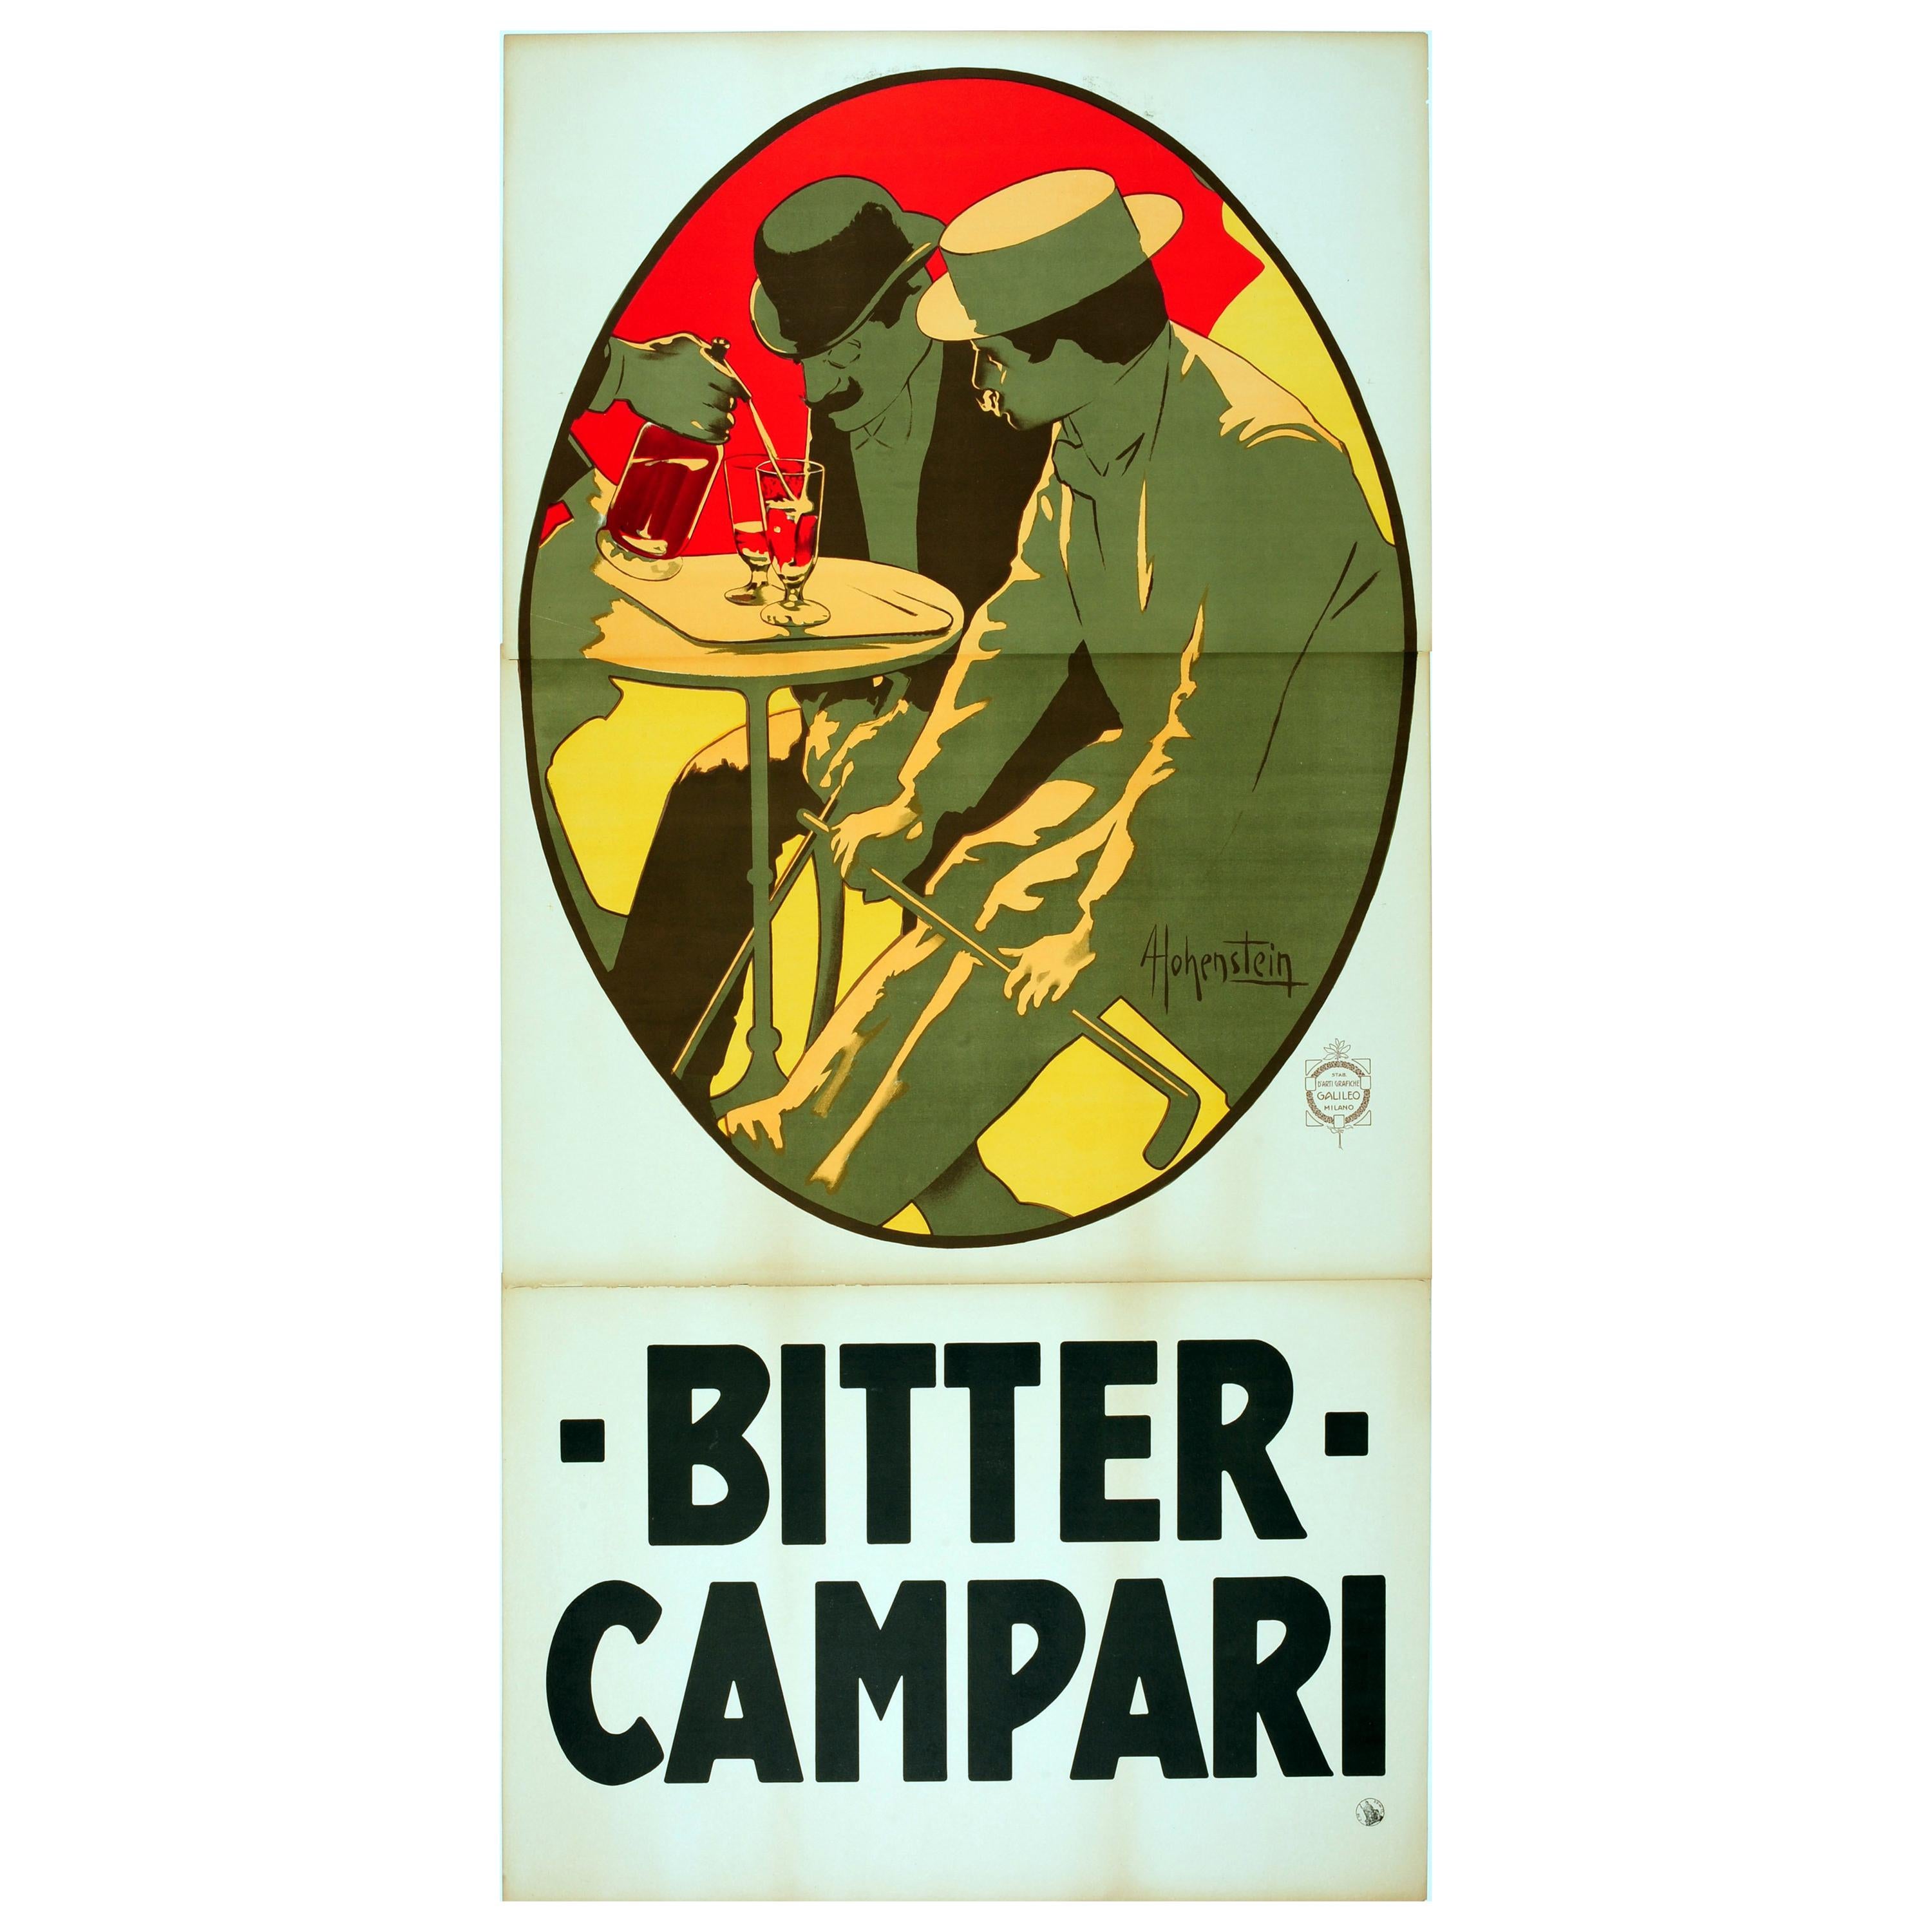 Grande affiche publicitaire originale d'antiquités sur une boisson ancienne - Bitter Campari Aperitif